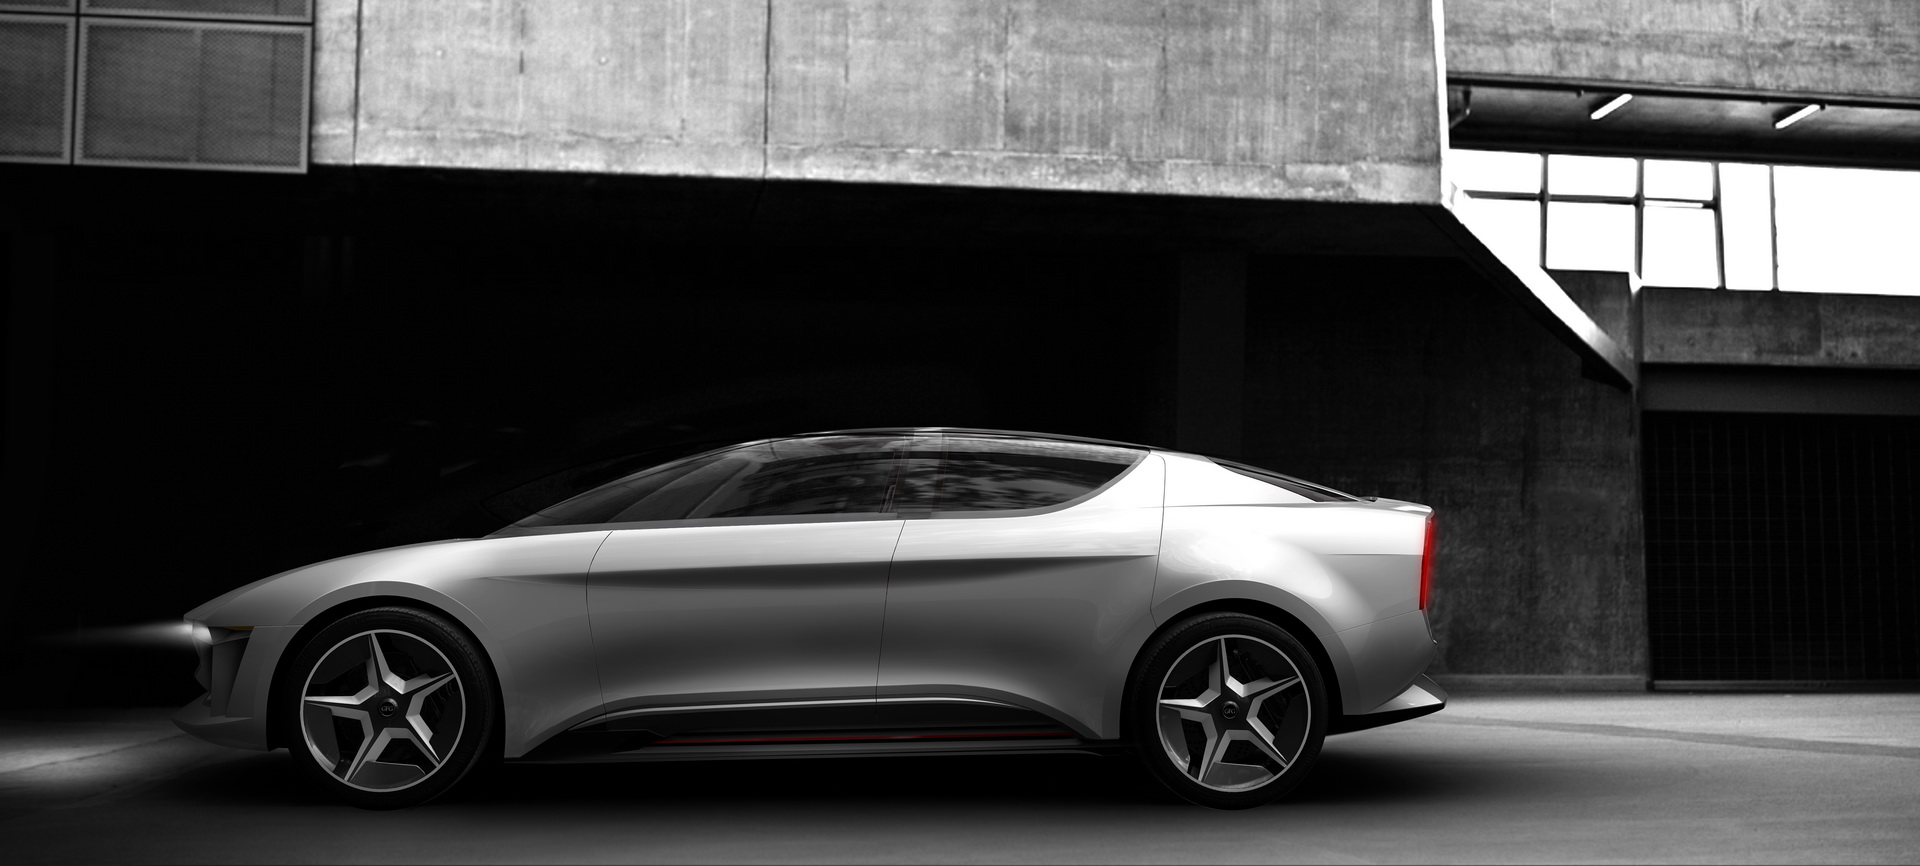 Geneva International Motor Show, gfg-style-sybilla-unveiled-geneva-2: GFG Sibylla EV Concept: Inovasi Terkini Pada Sebuah Mobil